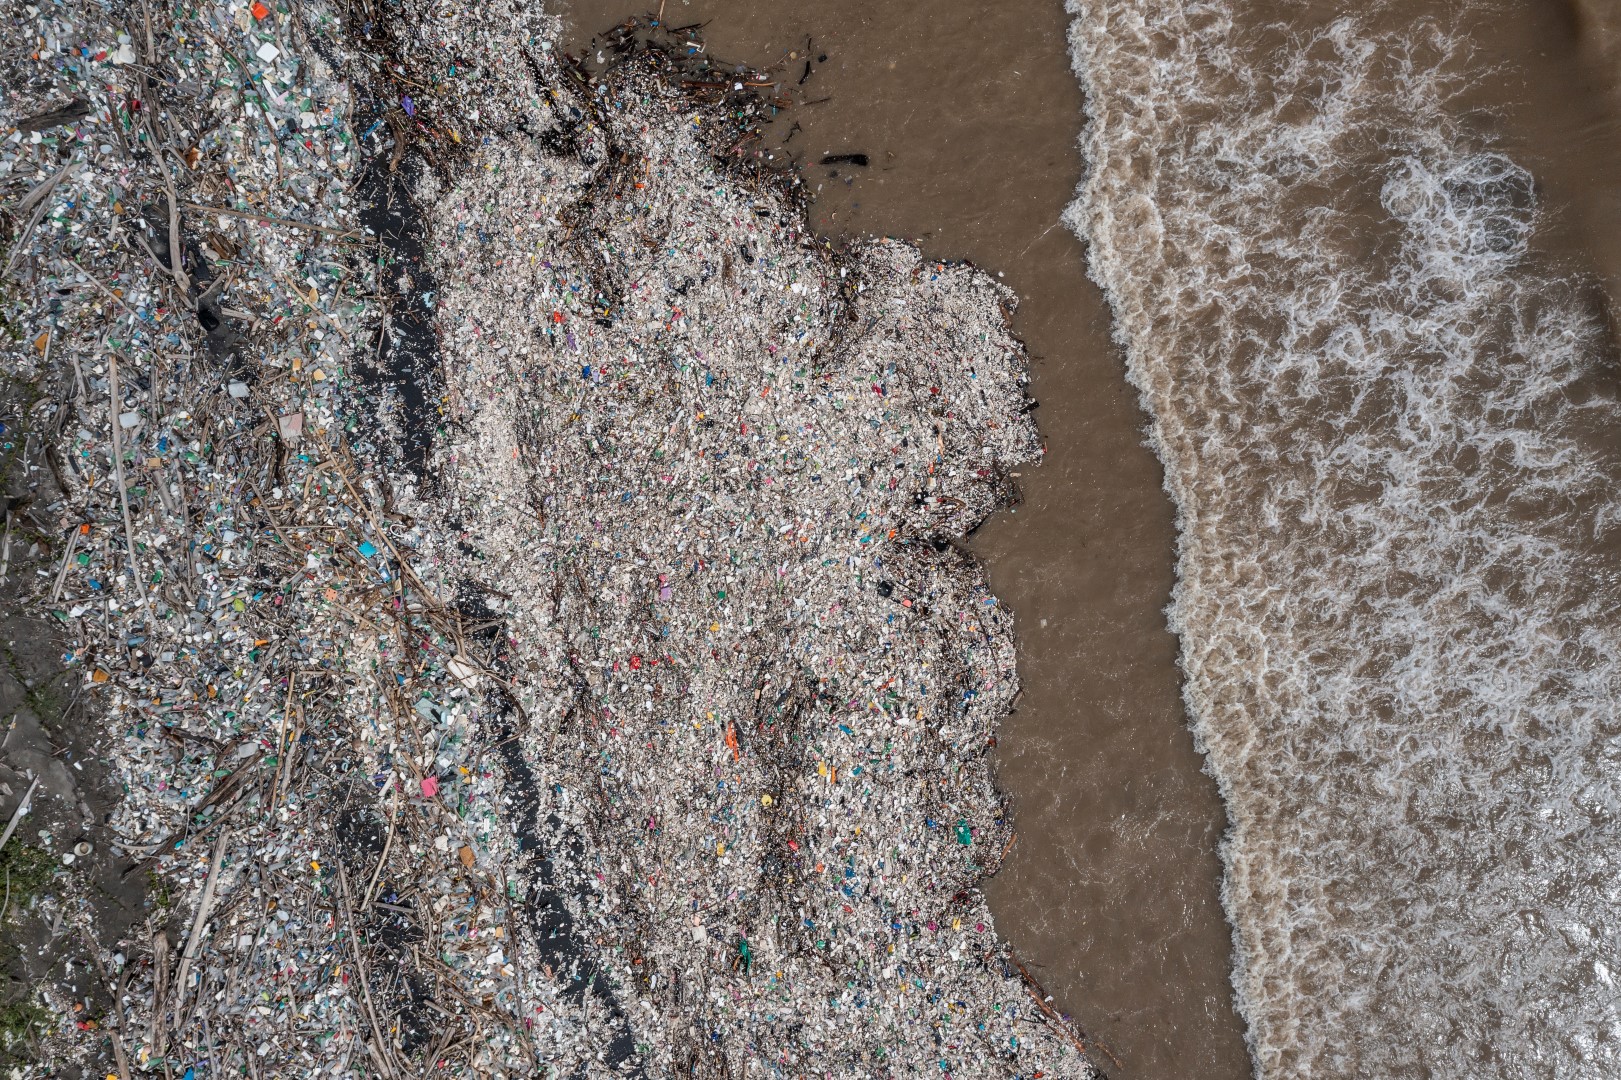 Imagen aérea que muestra la contaminación por residuos sólidos en las playas del Caribe guatemalteco. (Foto Prensa Libre: Cortesía Sergio Izquierdo)